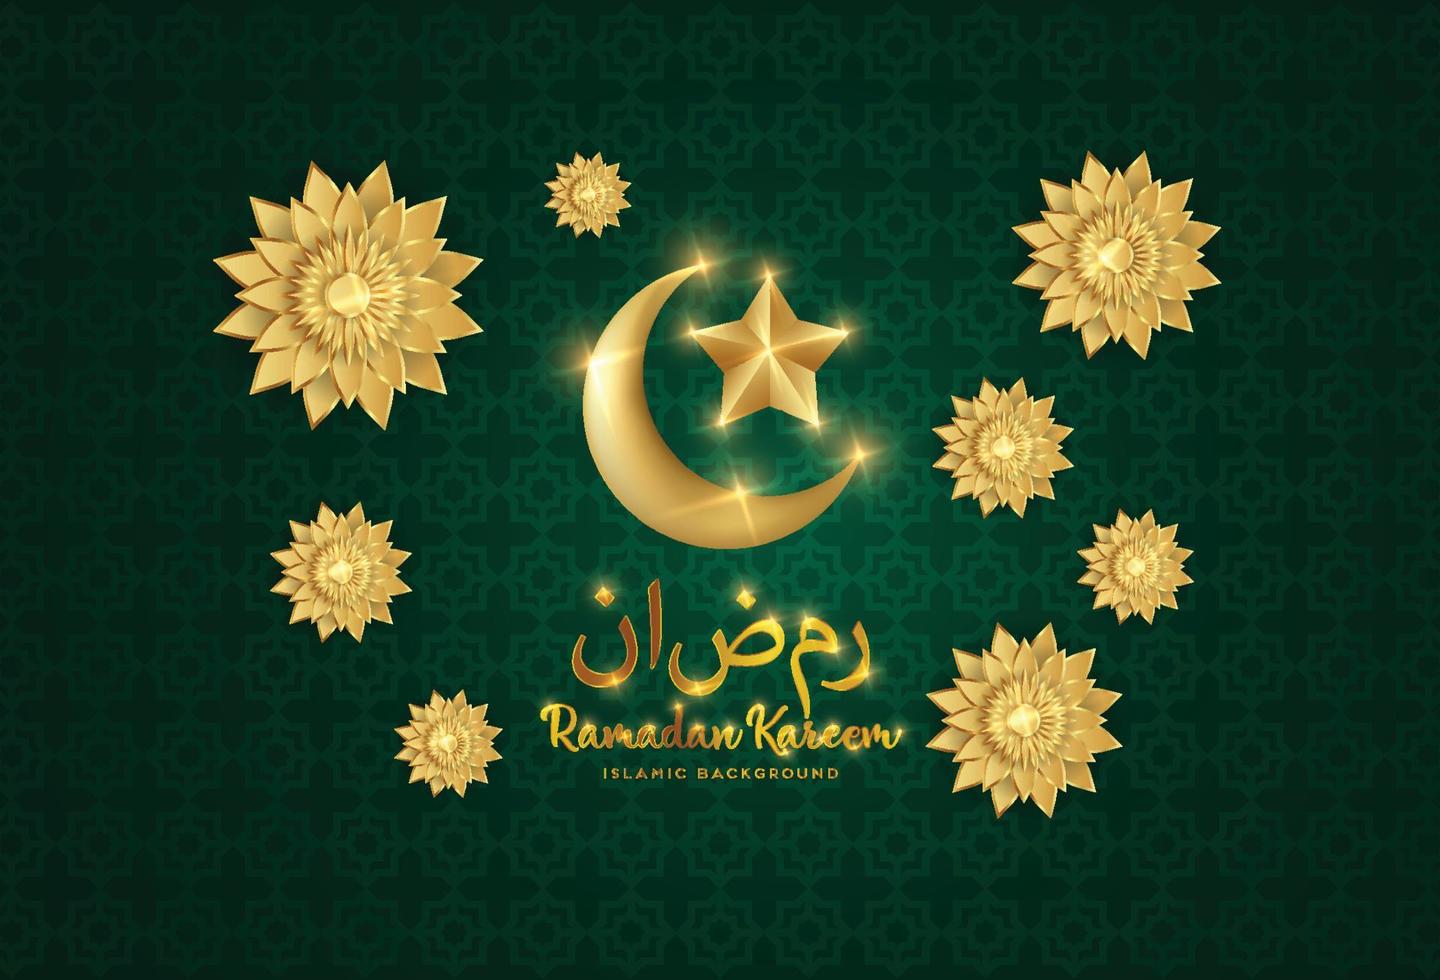 estandarte de ramadan kareem con luna creciente dorada metálica 3d, flores arabescas abstractas cortadas en papel y caligrafía manuscrita árabe. traducción ramadán kareem. vector. vector